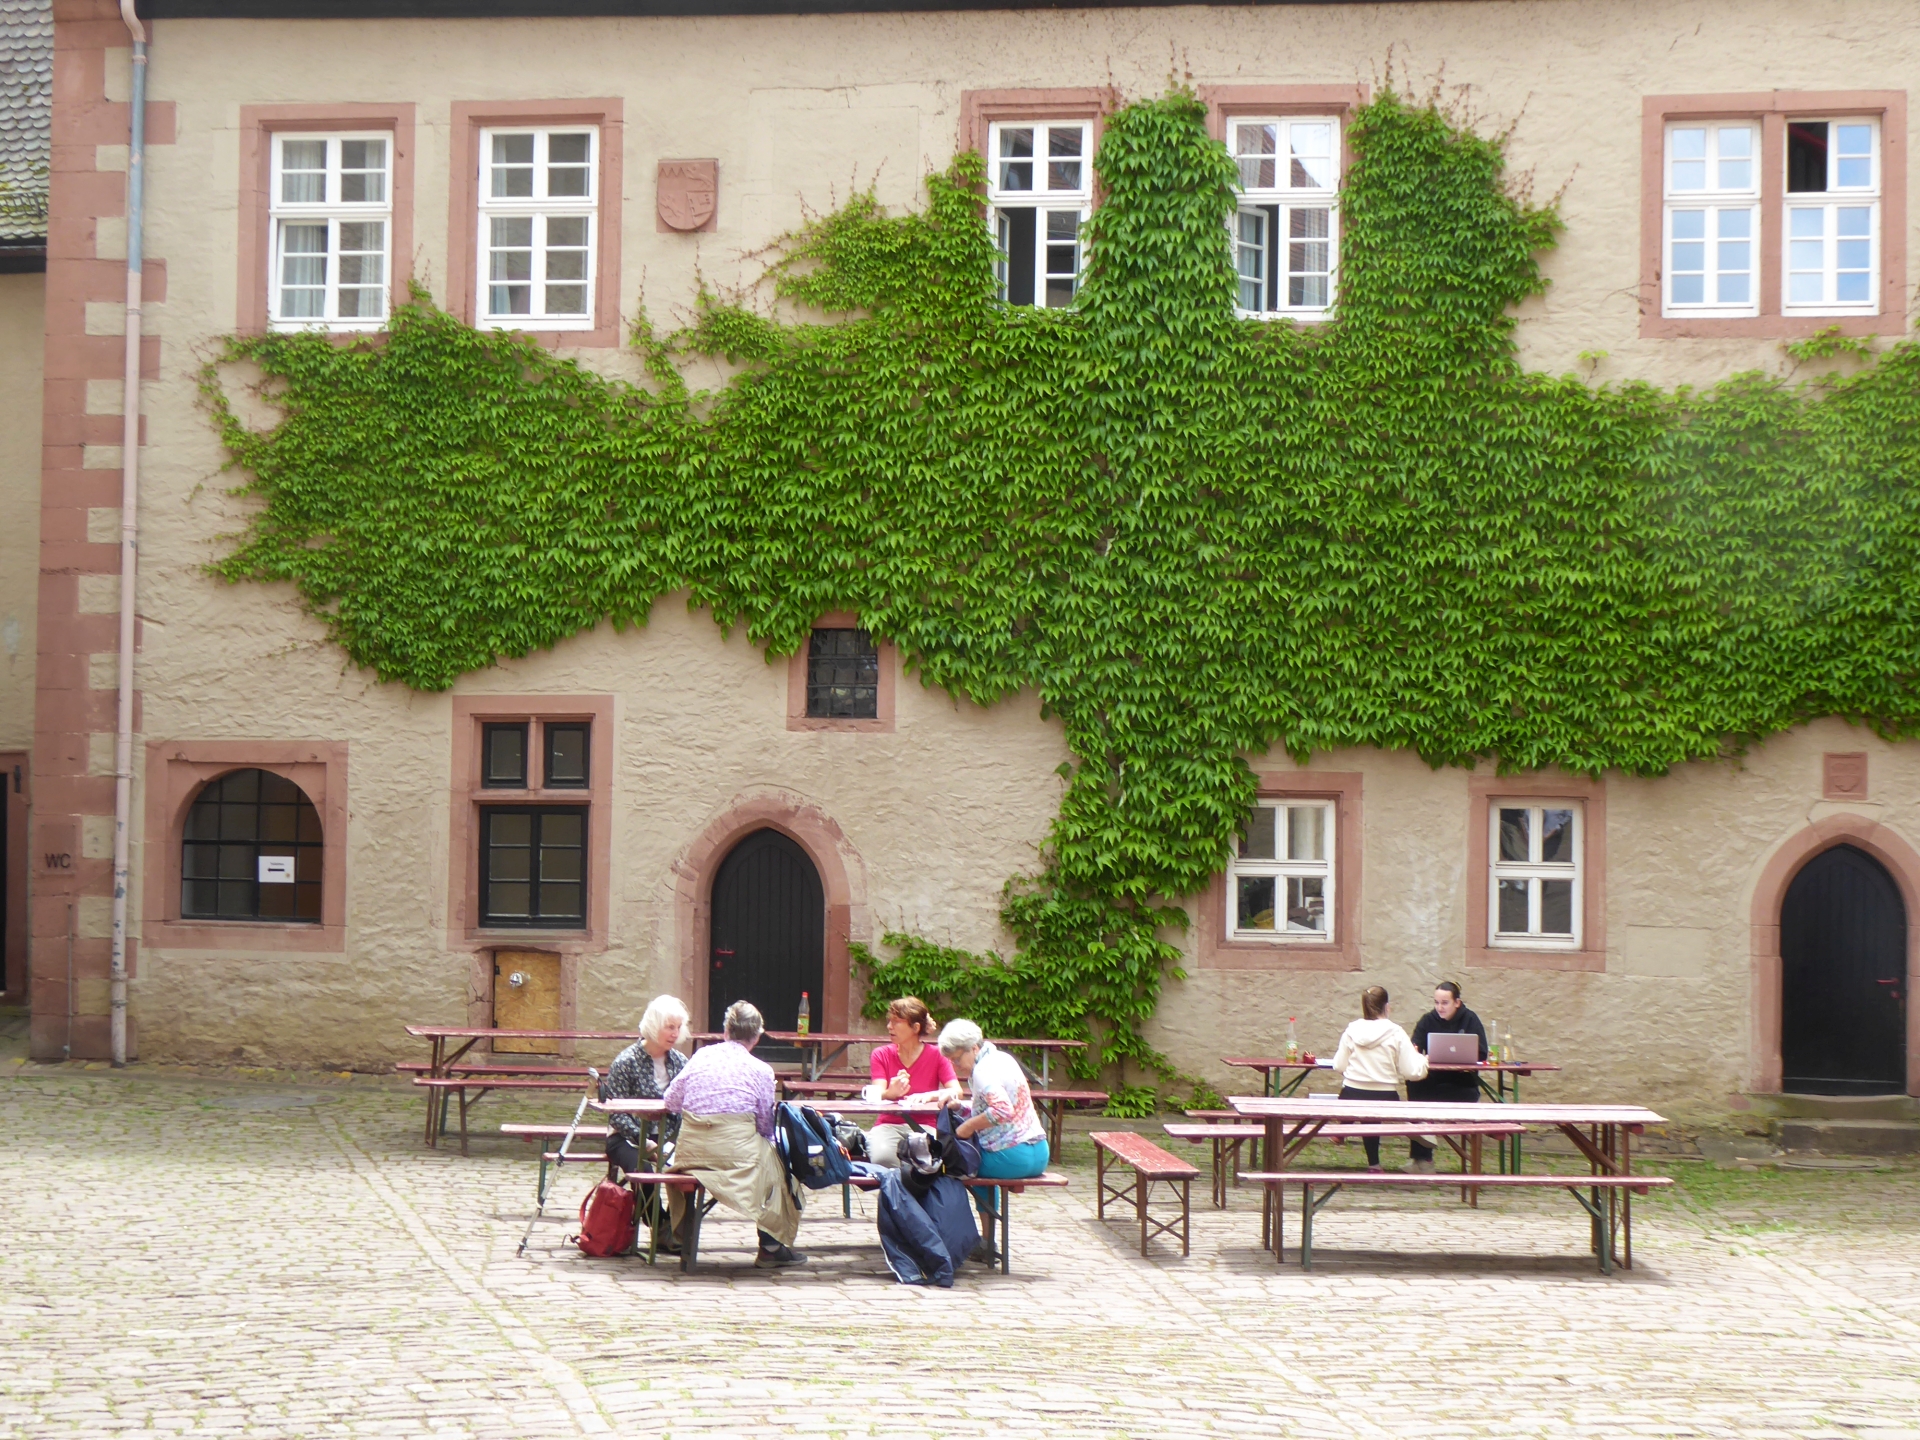 Die Gunst des Gegenteils - im Hof der Burg Rothenfels, Station einer Tour der Reihe GangART mit Georg Magirius